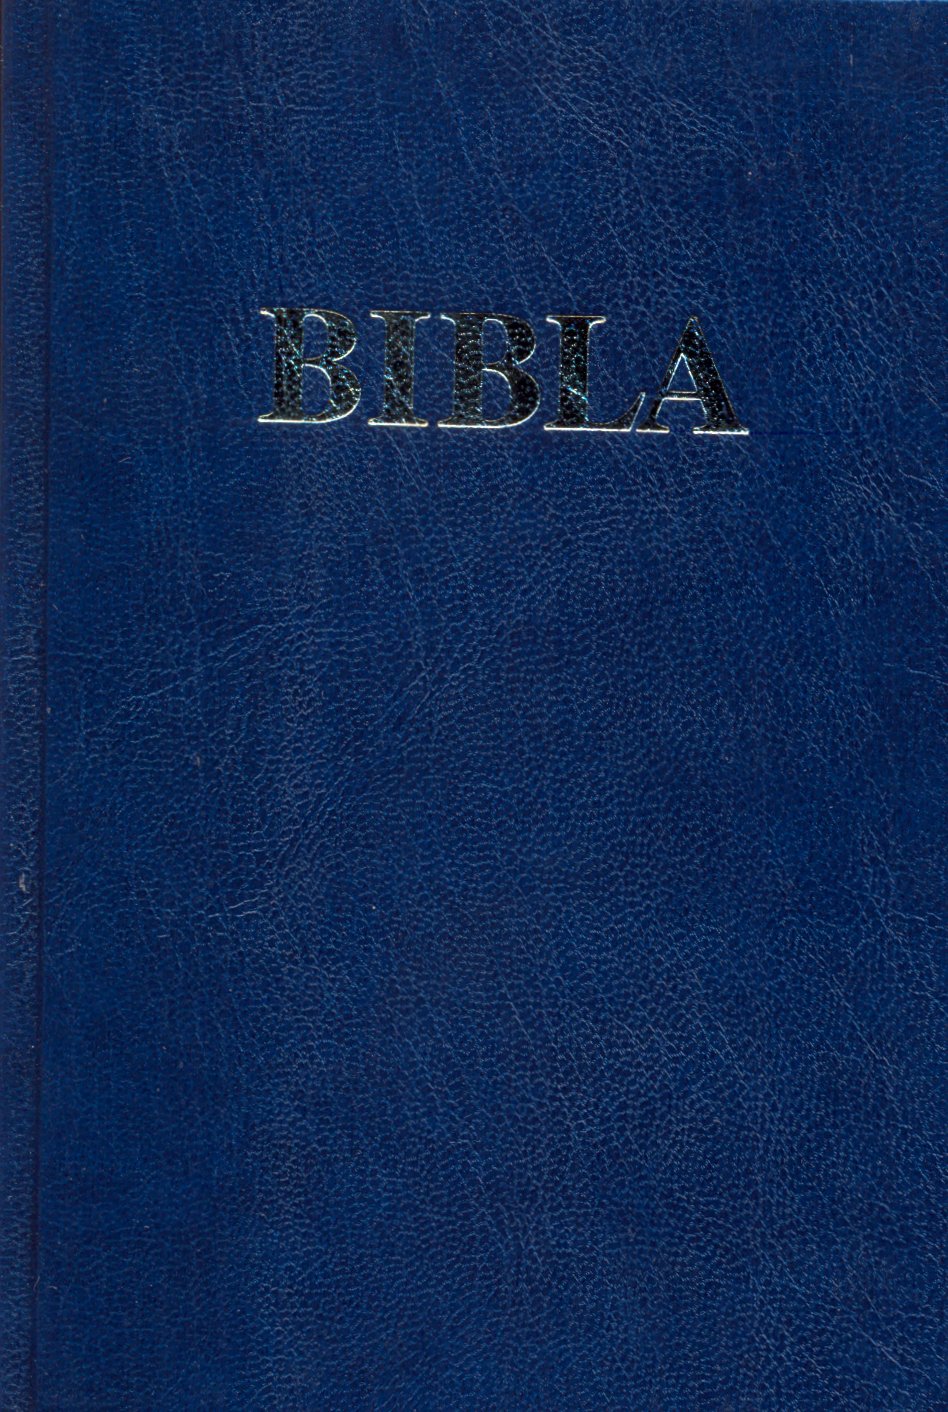 Albanisch, Bibel, broschiert